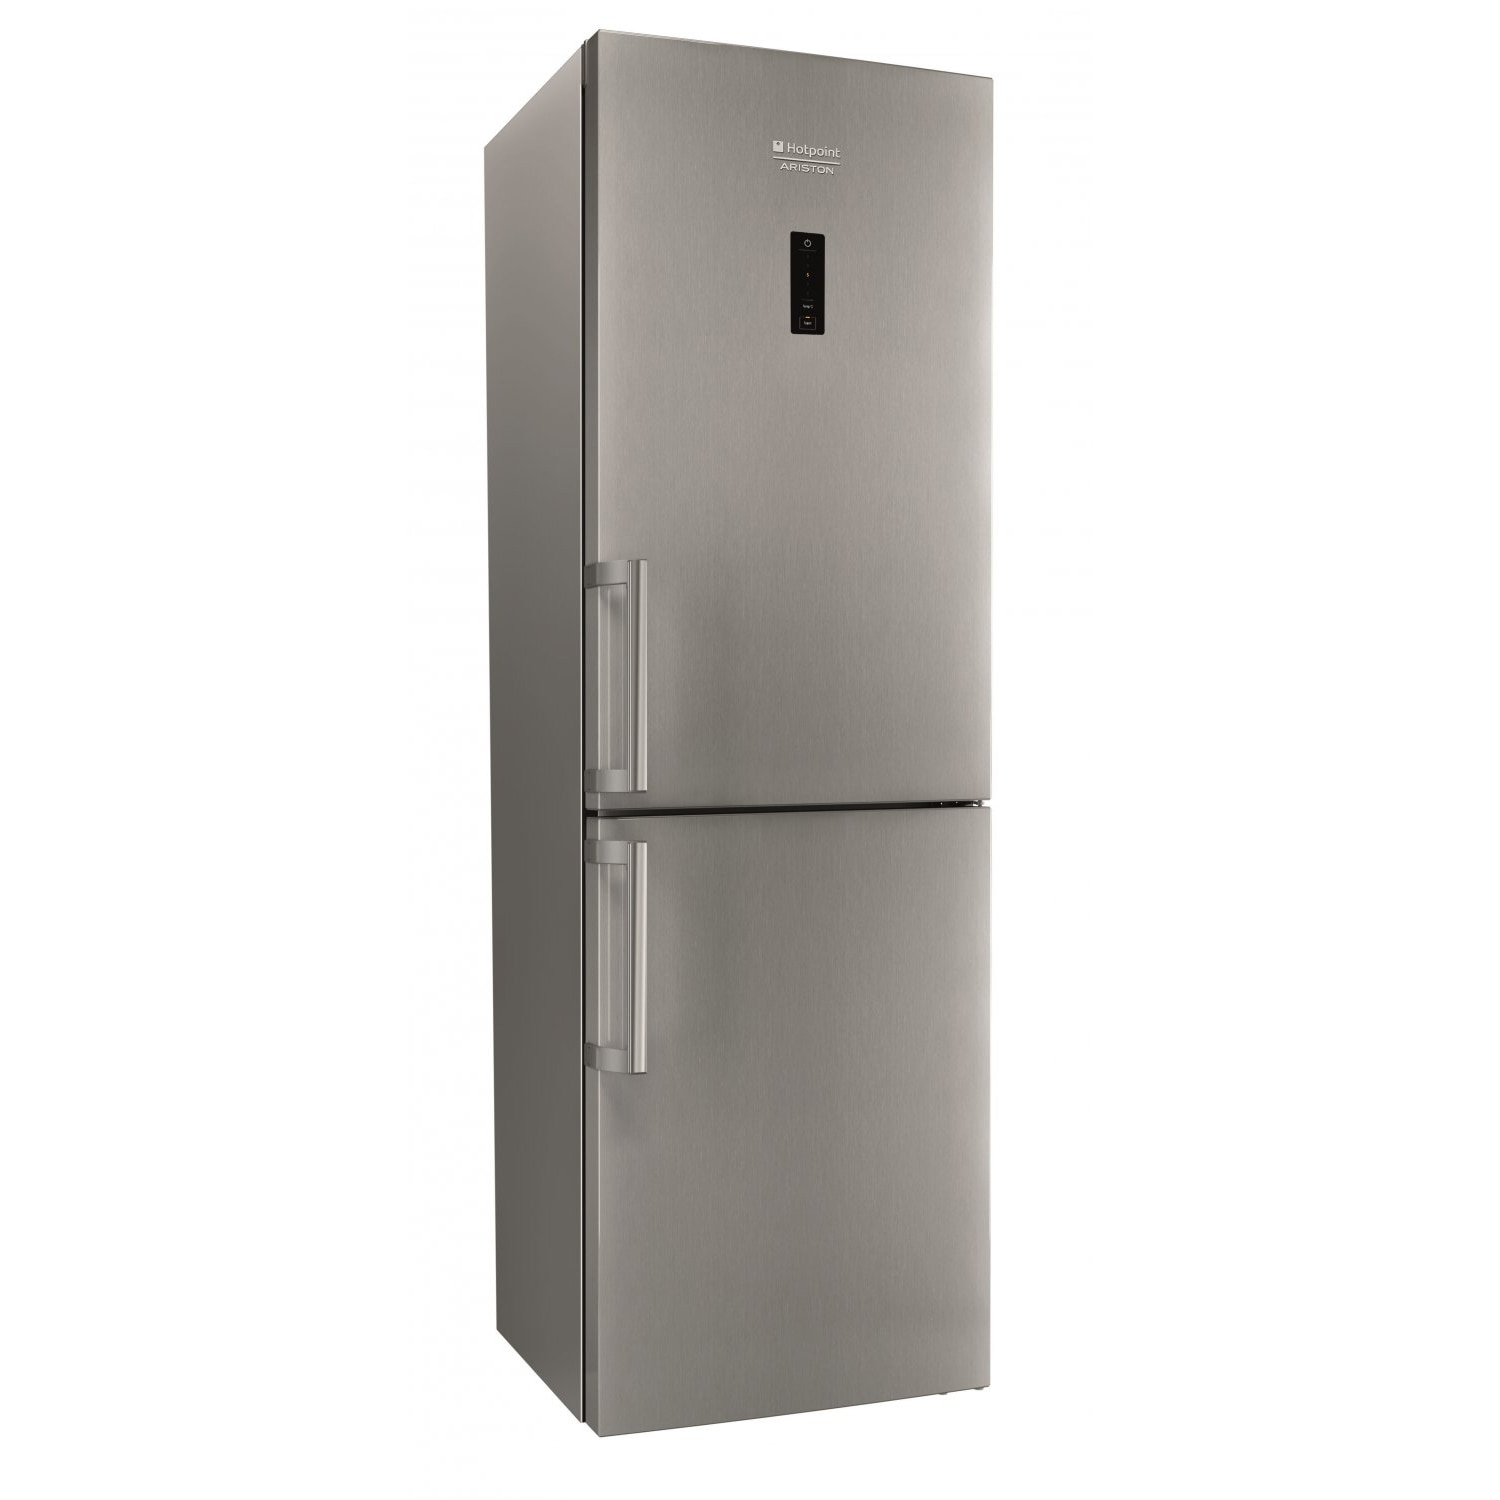 Хладилник Hotpoint XH8 T2O XZH с обем от 240 л.